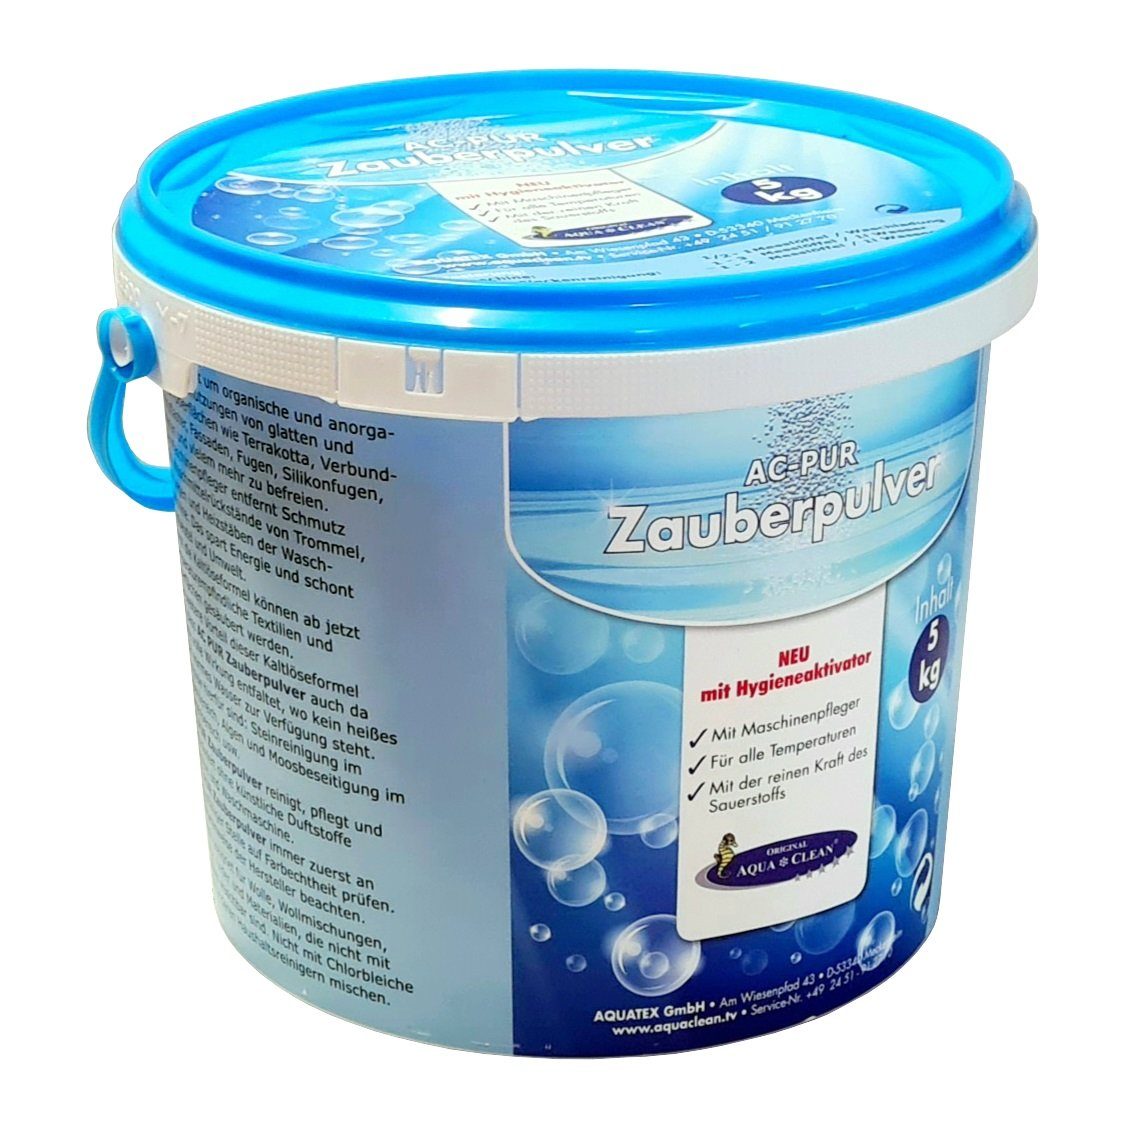 CLEAN mit Fleckentferner AC Hygieneaktivator 5kg AQUA PUR Zauberpulver